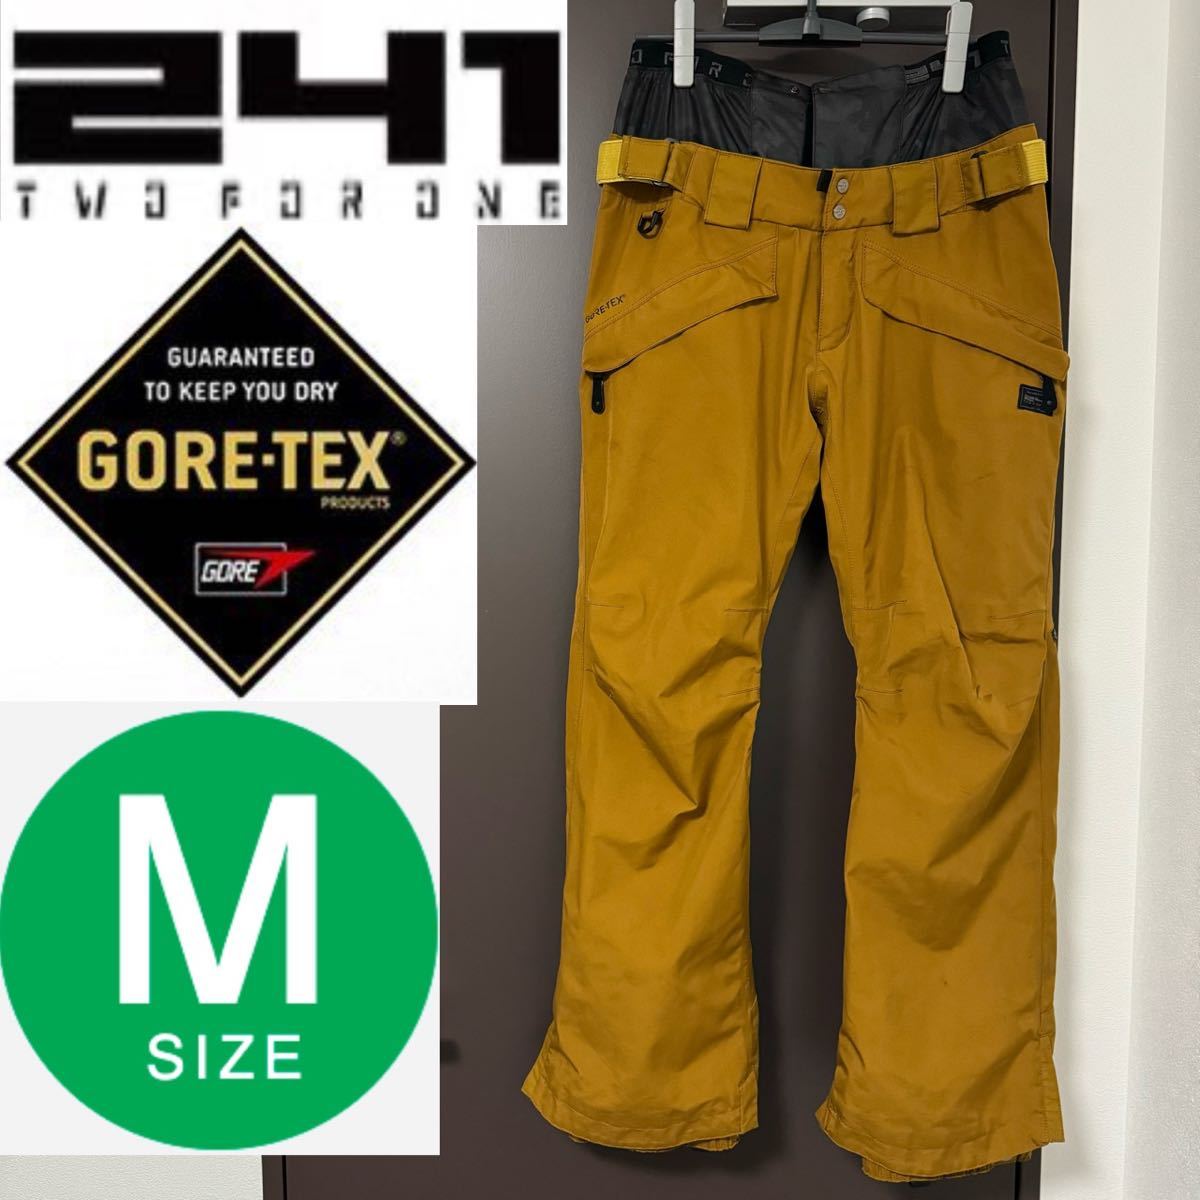 241 TRAILBLAZER PNT GORE-TEX トゥーフォーワン トレイル ブレザー ゴアテックス スノーボード スノボ Mサイズ メンズ M パンツ ズボン